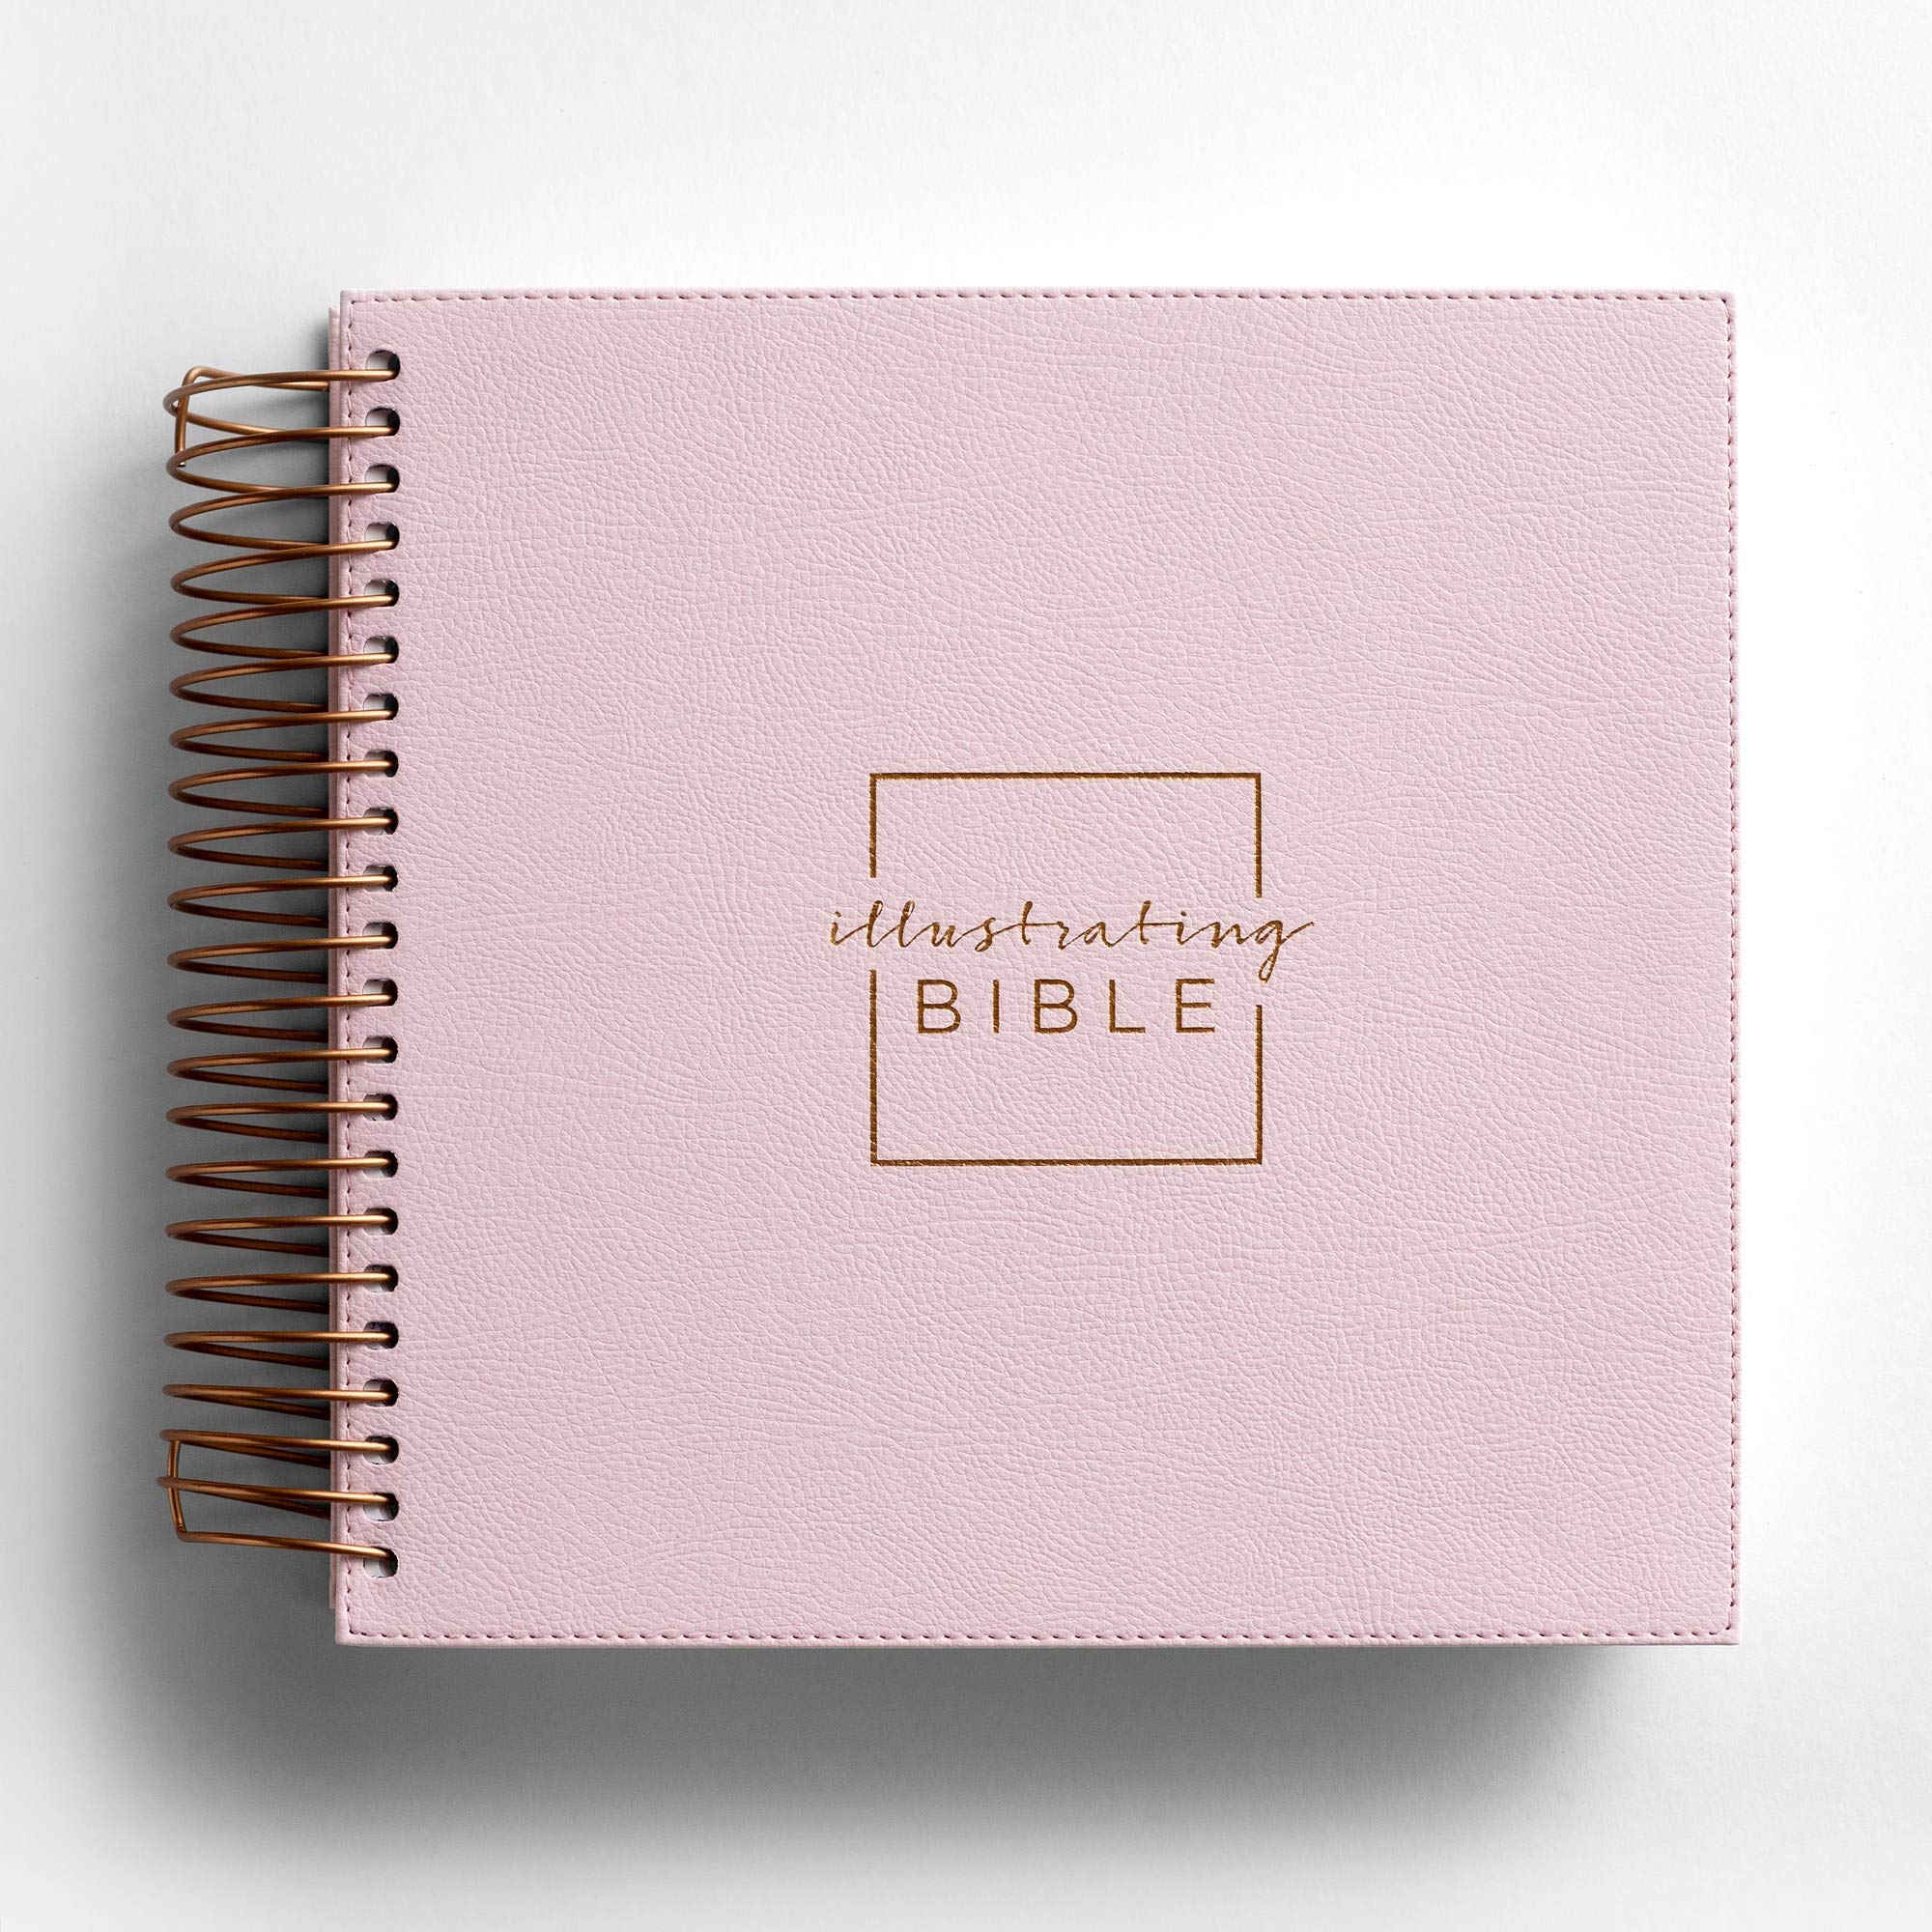 Illustrating Bible NIV Pink (Spriral Bound Journaling Bible)